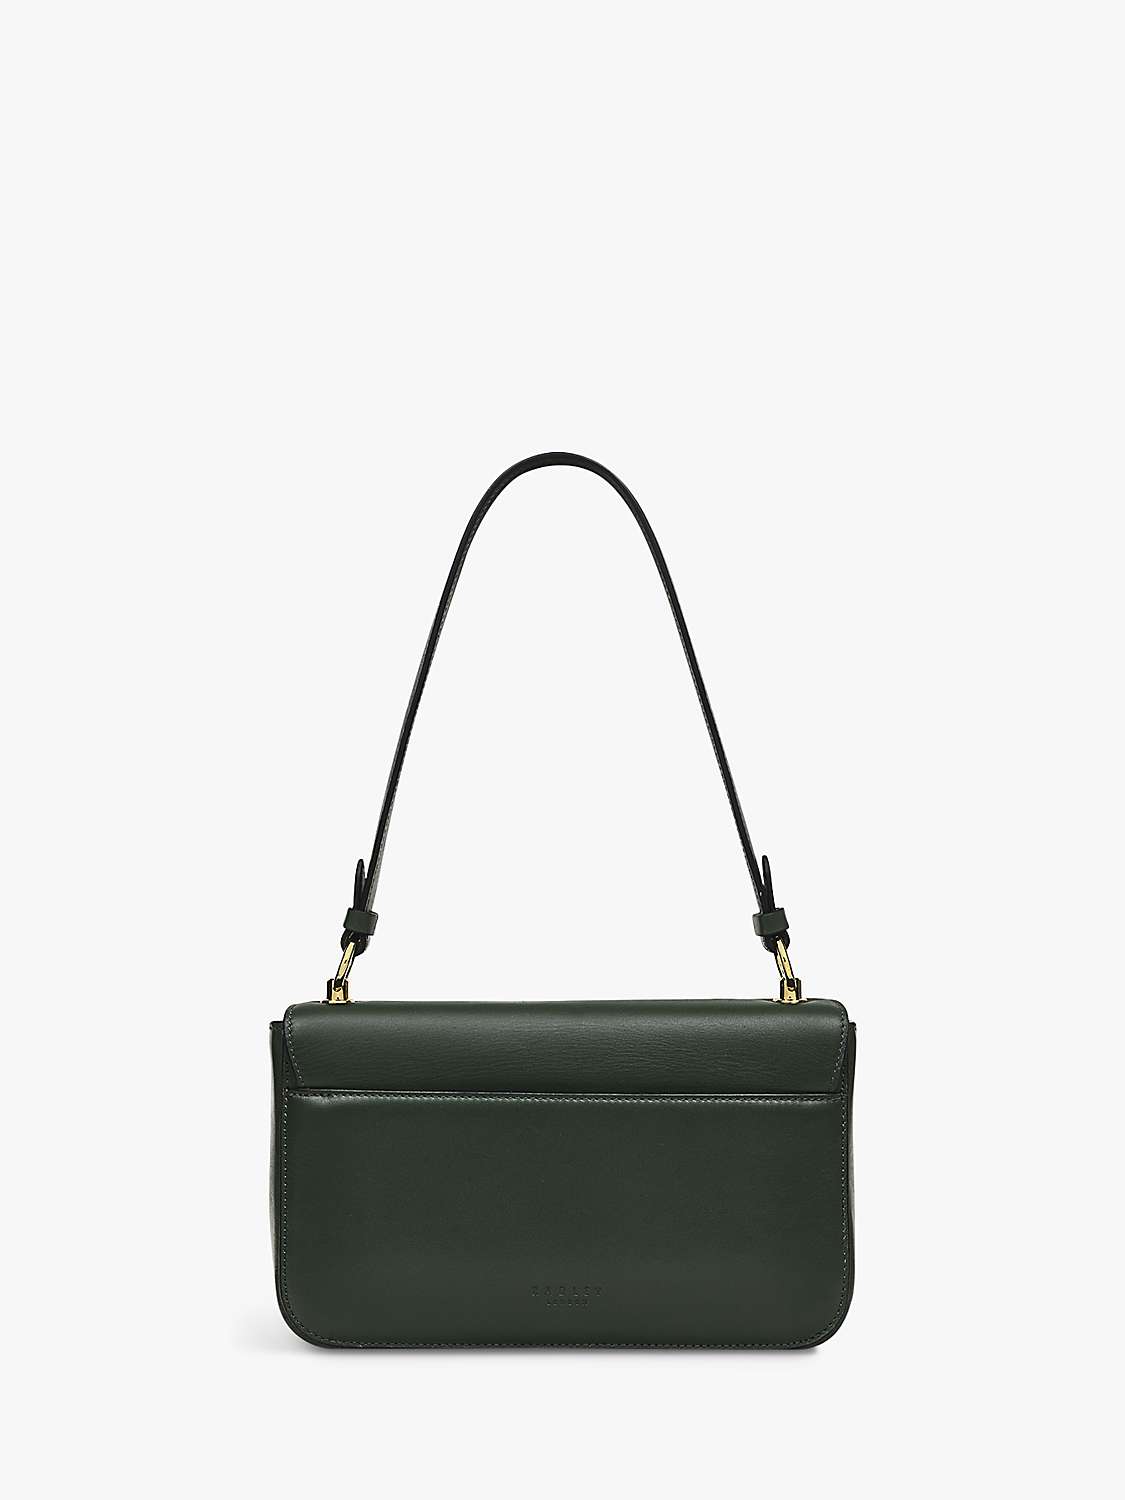 Buy Radley Hanley Close Medium Leather Shoulder Bag Online at johnlewis.com